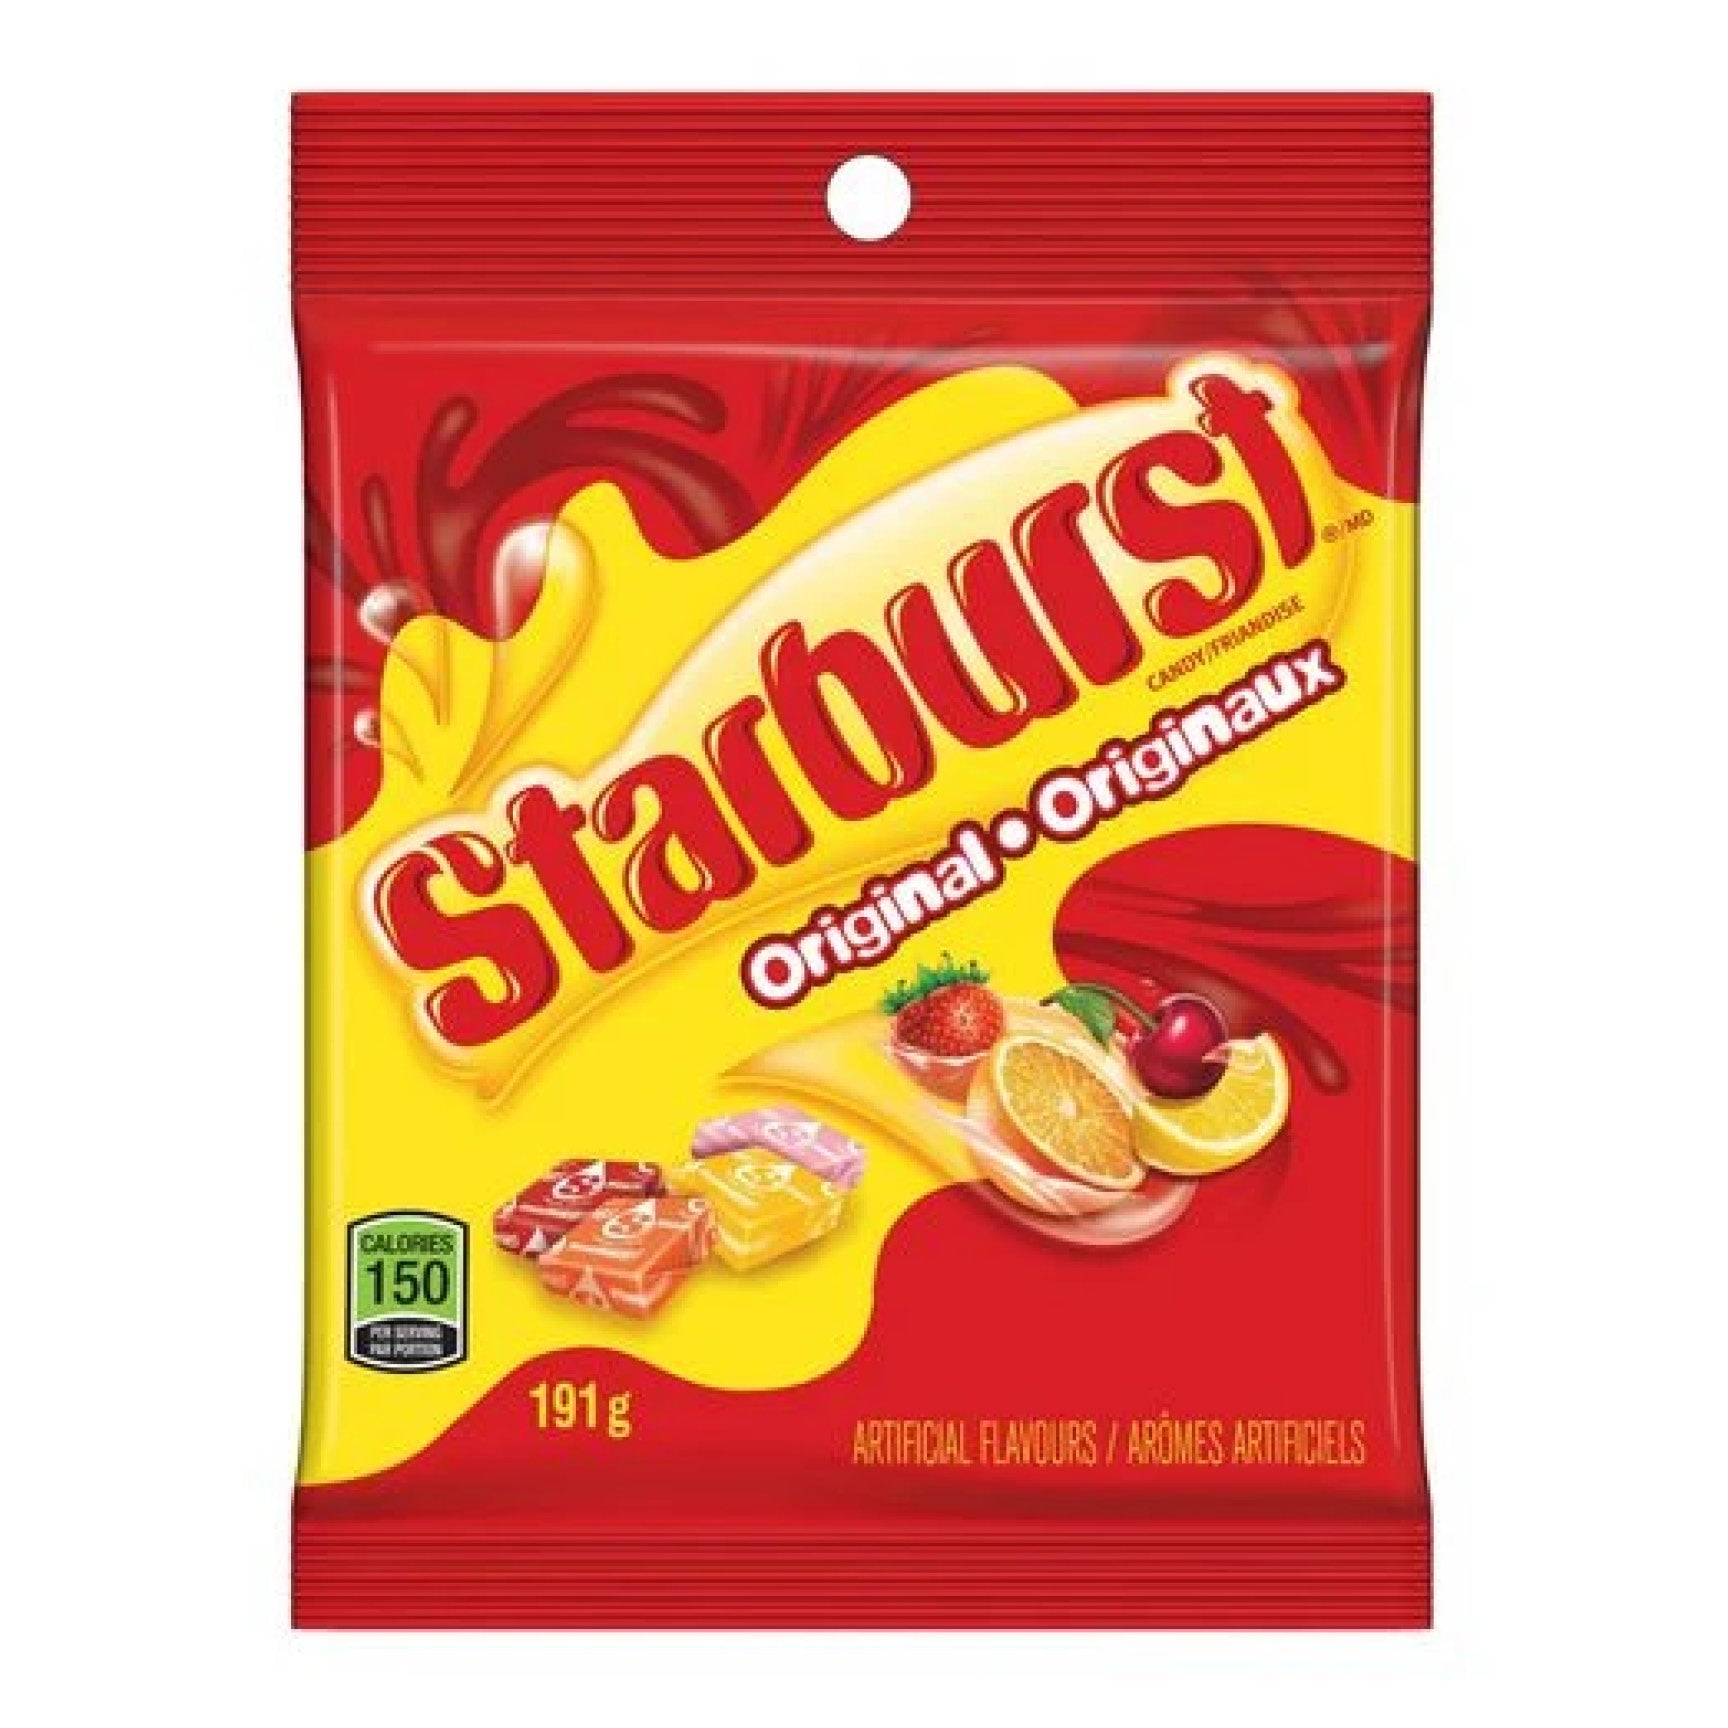 Starburst Fruit Chews Original Candy, 191g